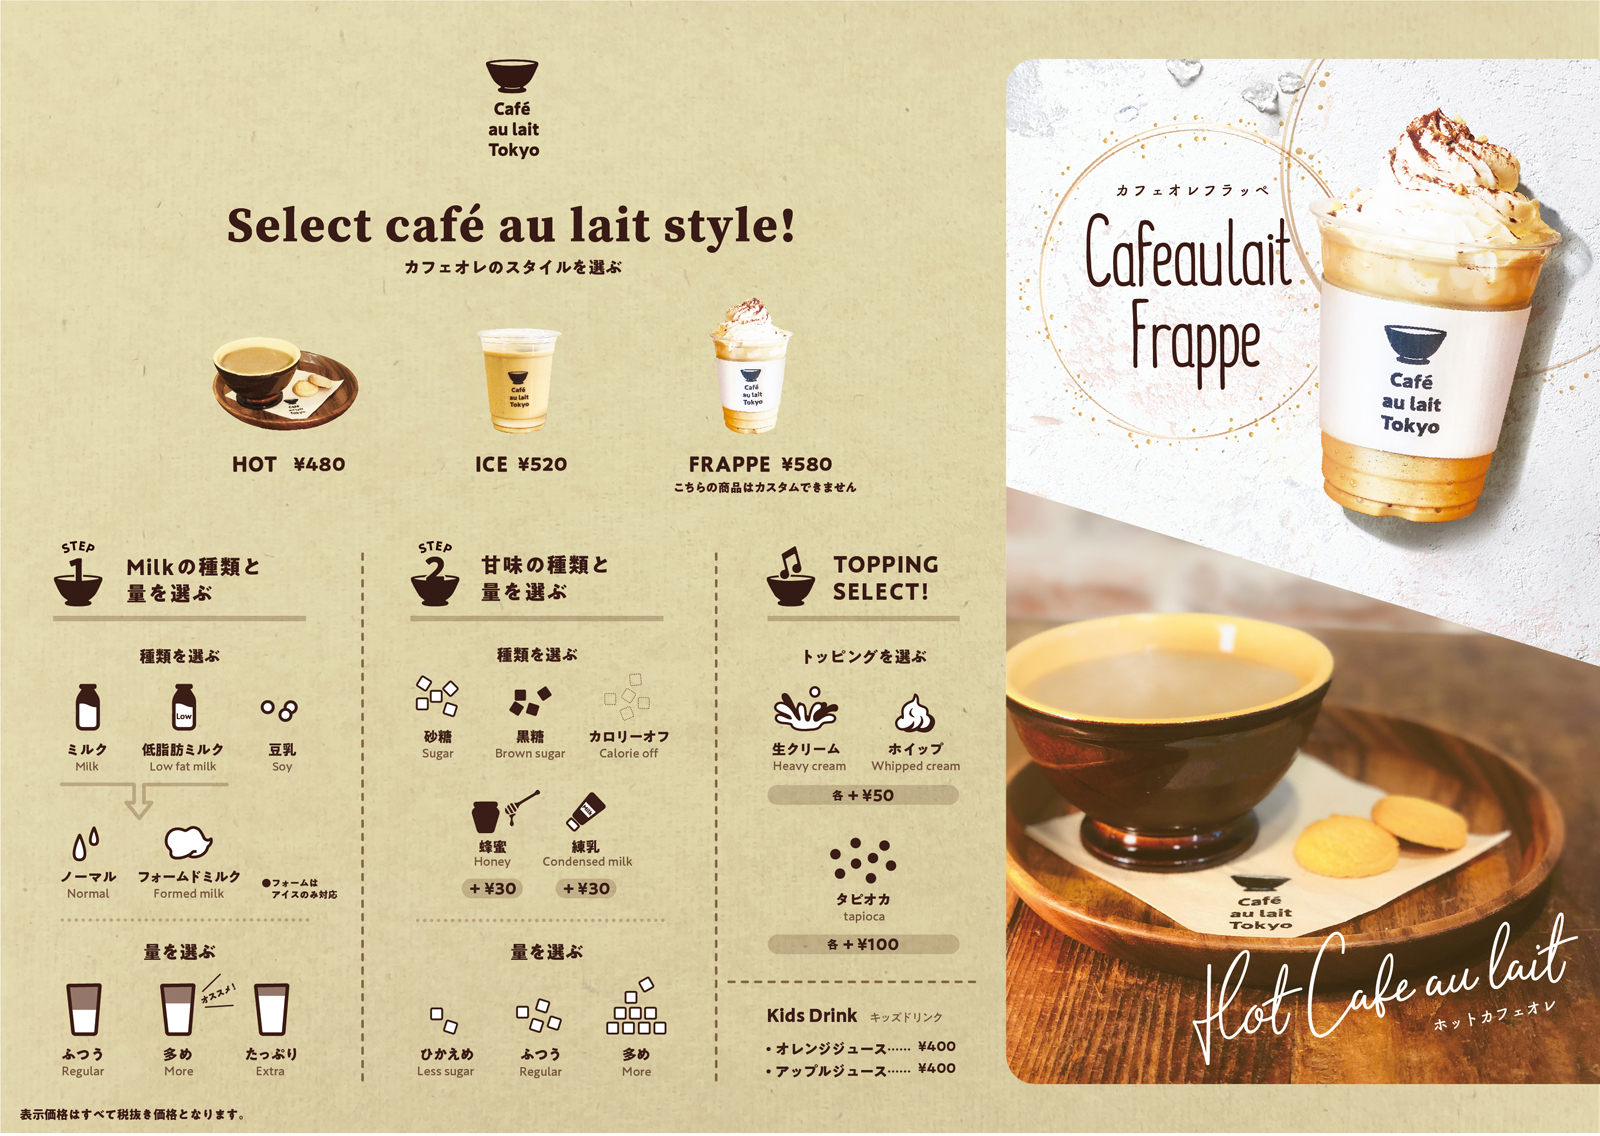 カフェオレ専門店「Cafe au lait TOKYO」メニュー